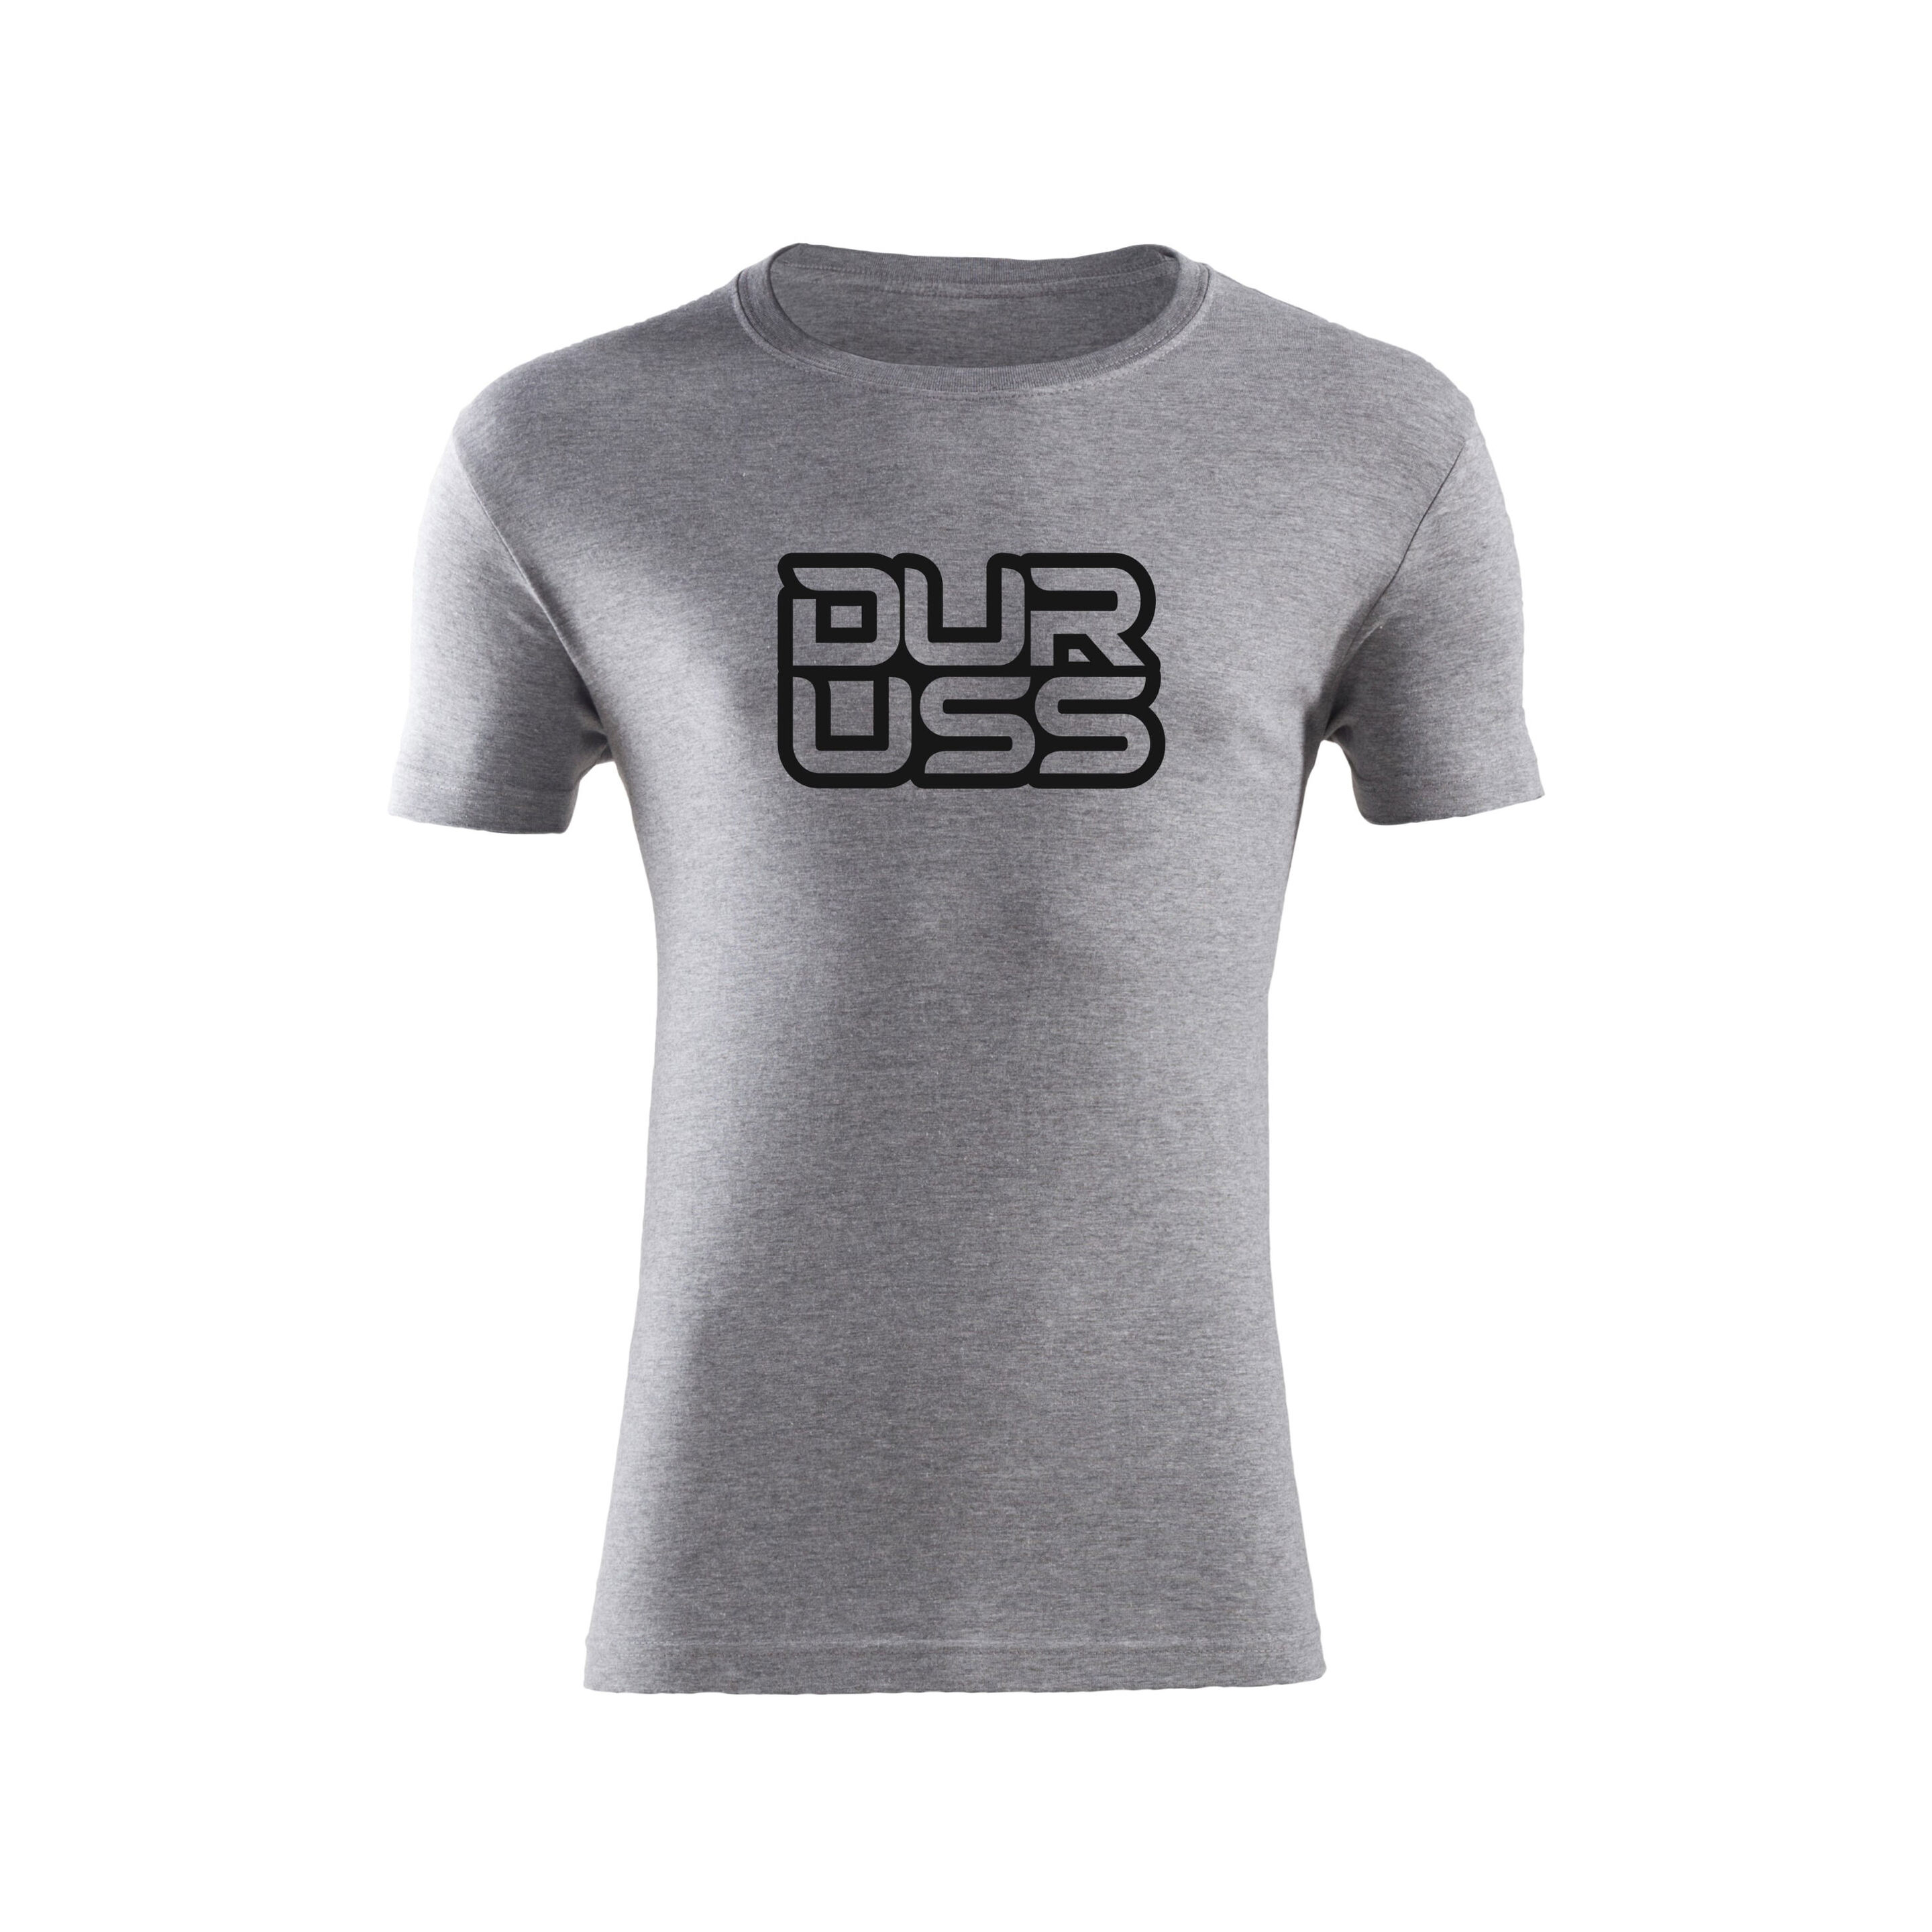 Camiseta Casual Sport Shine Gris Duruss Padel